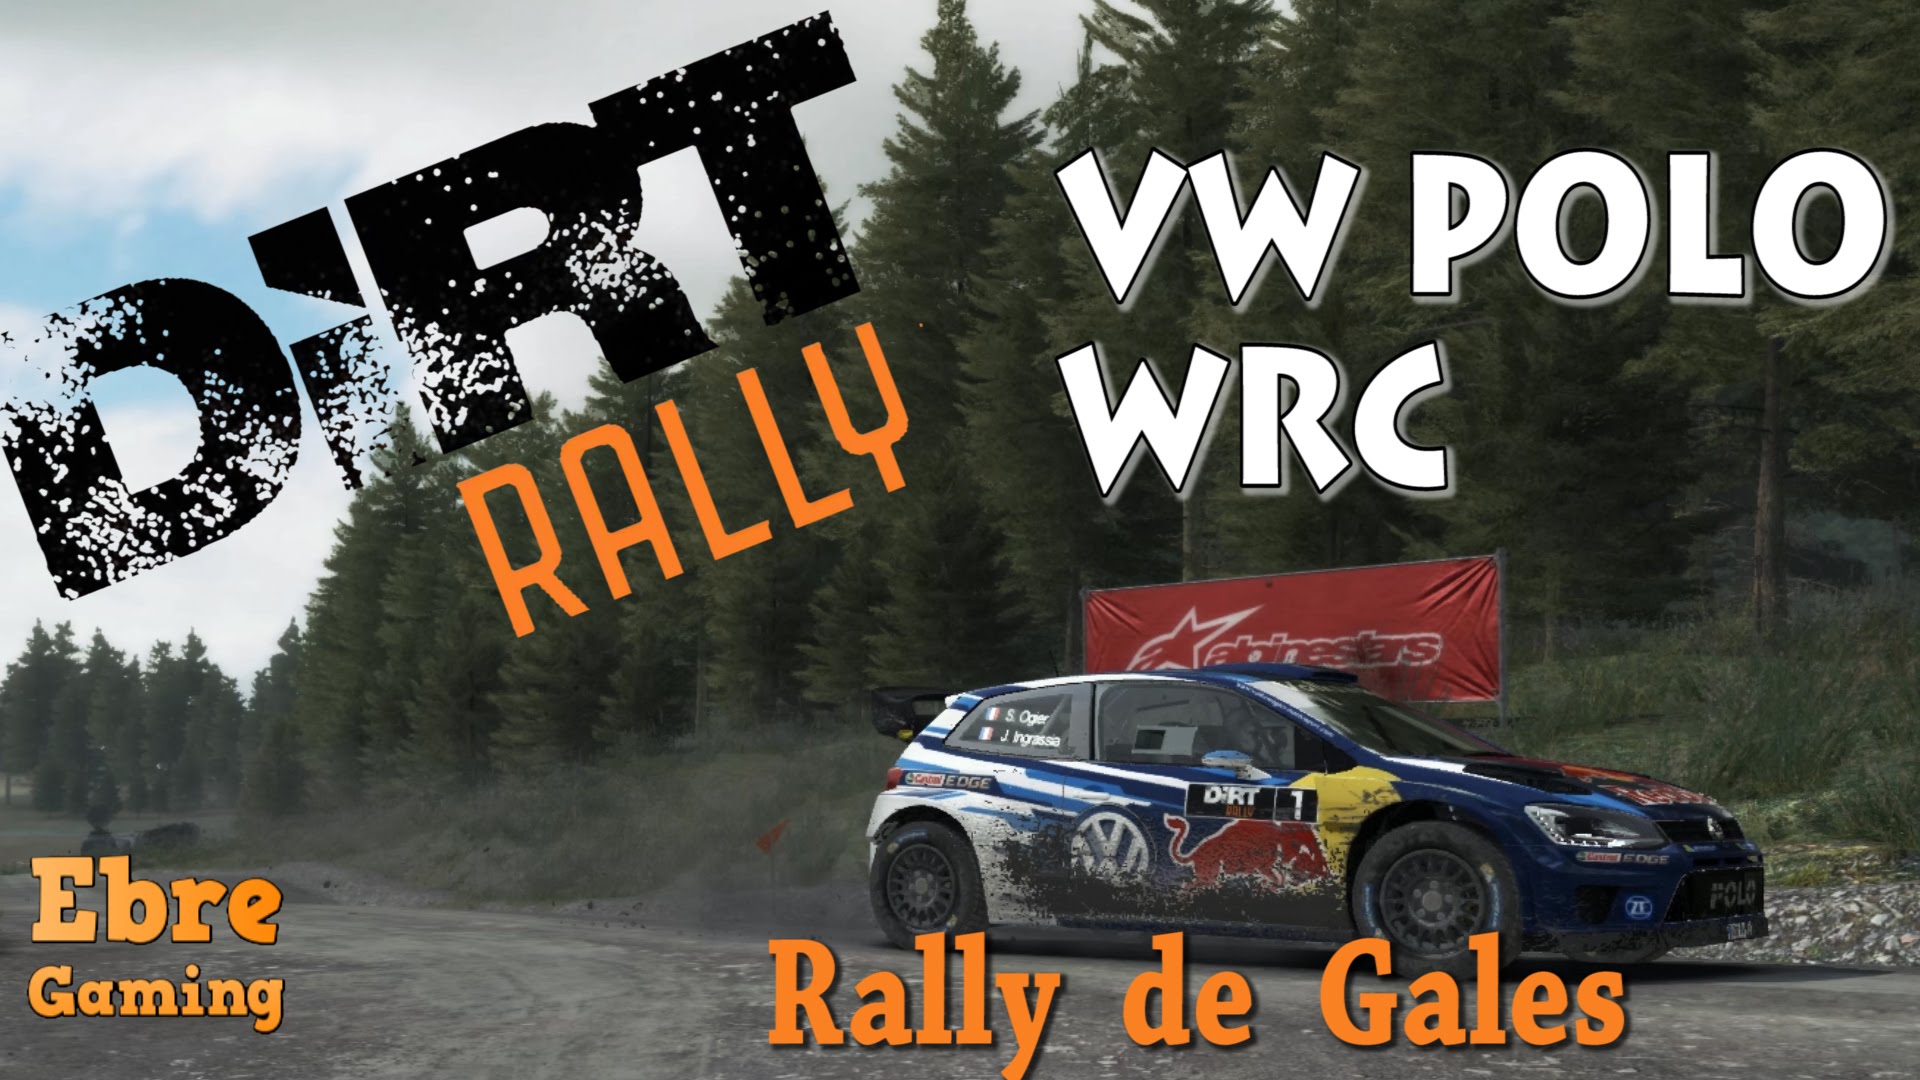 Tram al rally de Gales amb el Polo WRC || Dirt Rally de Pere J. Pastor